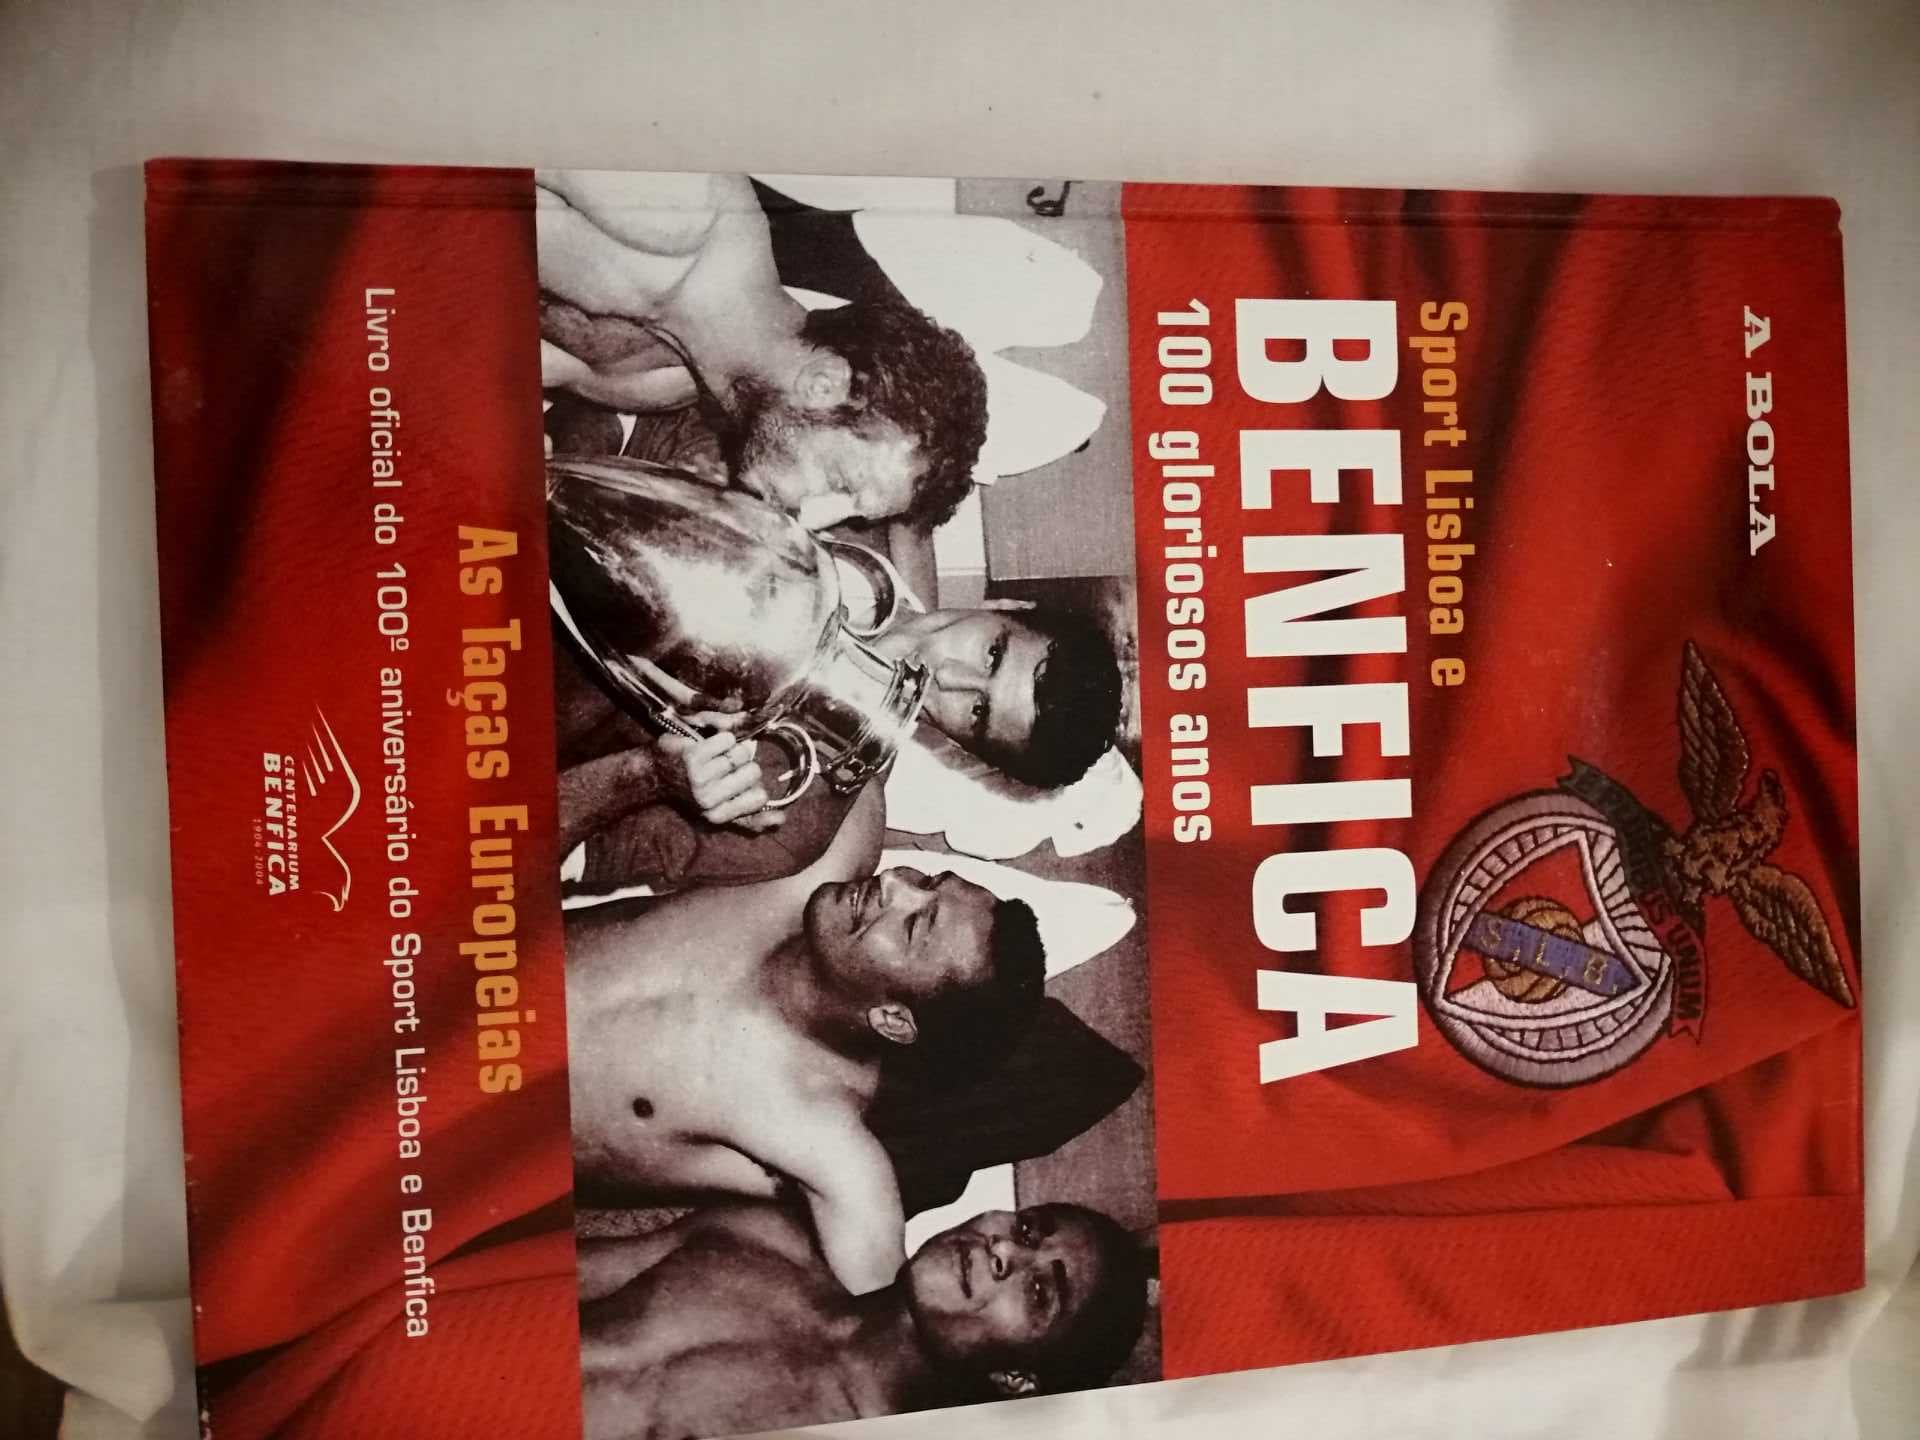 Sport Lisboa e Benfica  100 Gloriosos anos Colecção 7 Livros